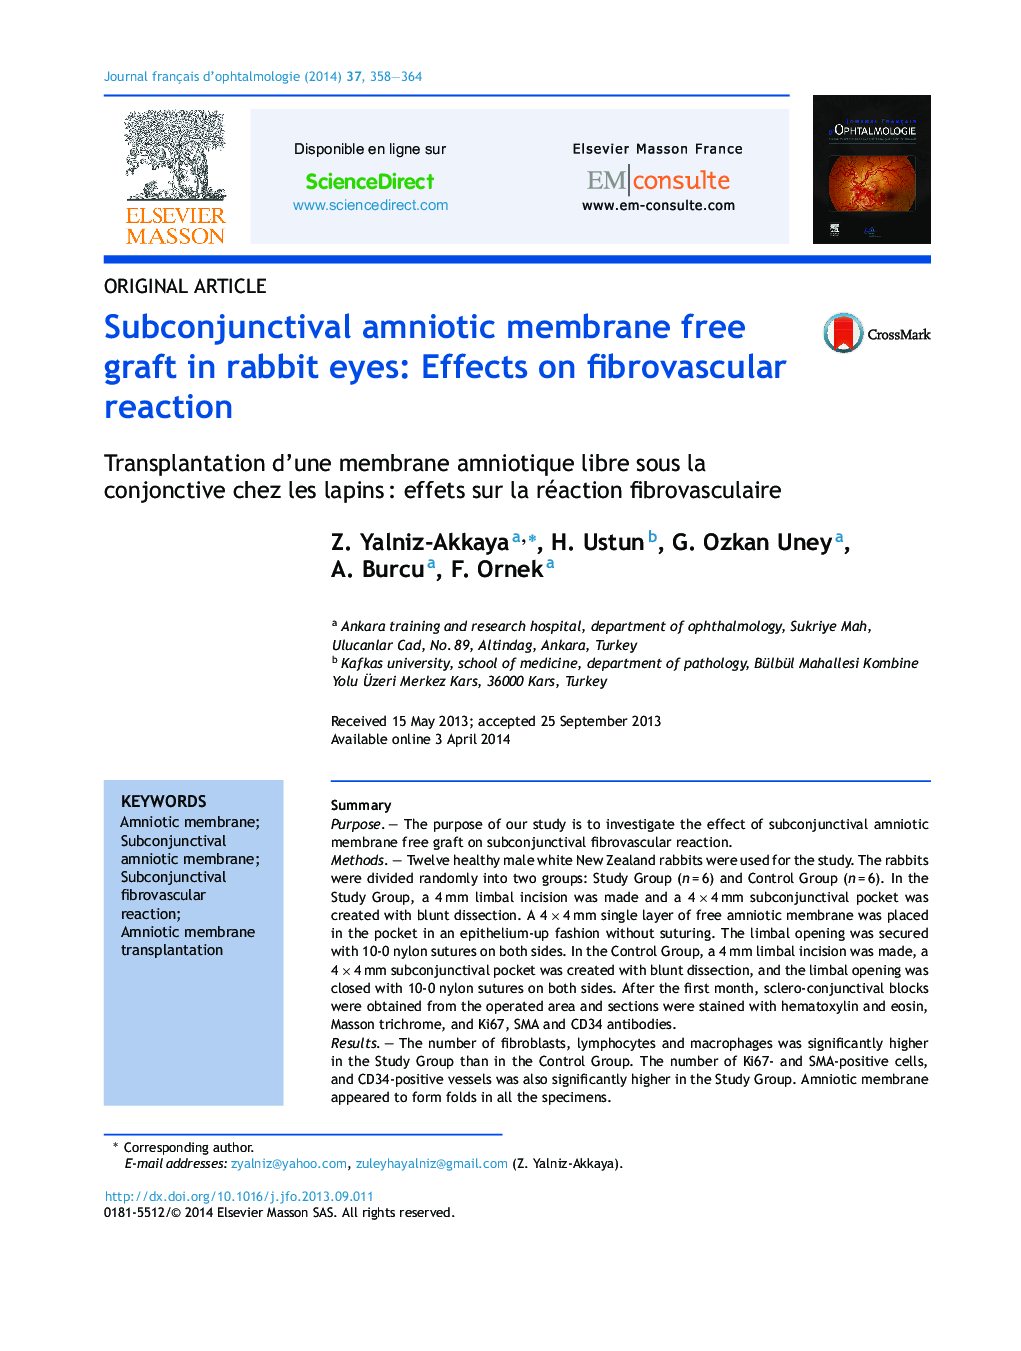 پیوند آزاد غشای آمنیوتیک زیر چشم در چشم خرگوش: اثر بر روی واکنش فیبروموشان 